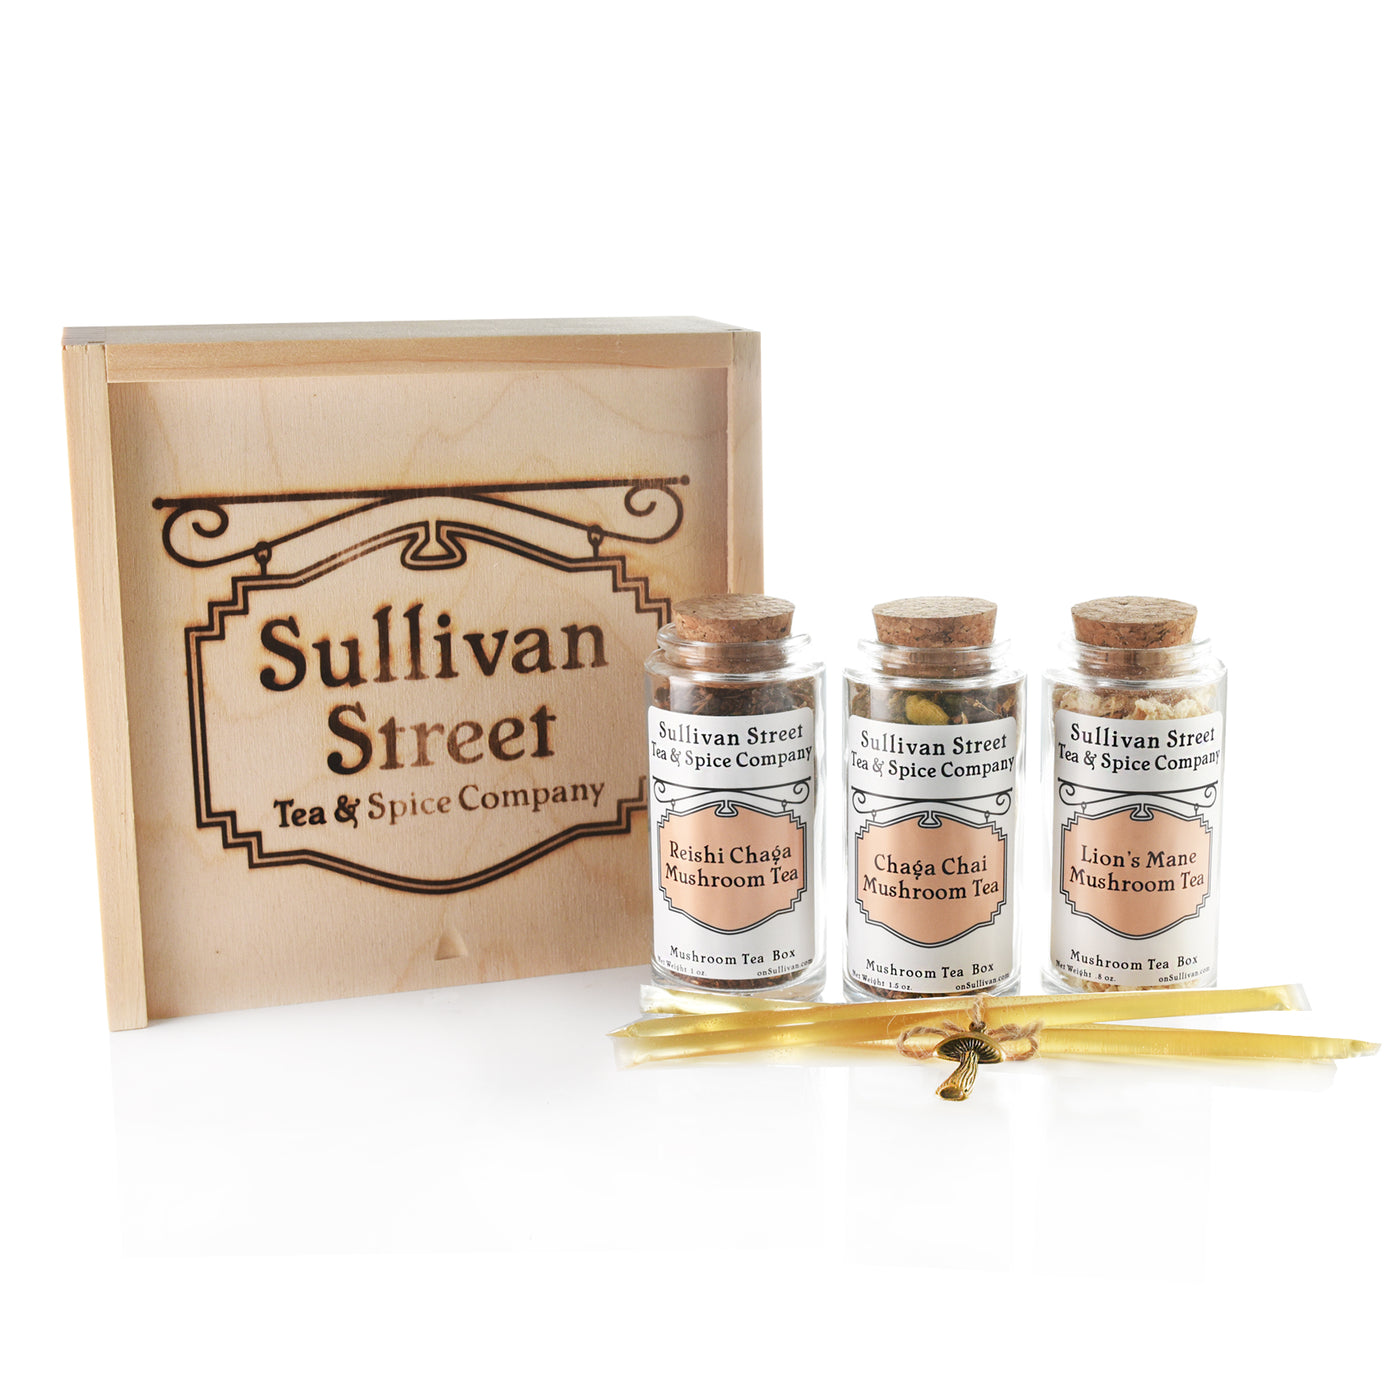 Mushroom Tea Gift Box - Sullivan Street Tea & Spice Company